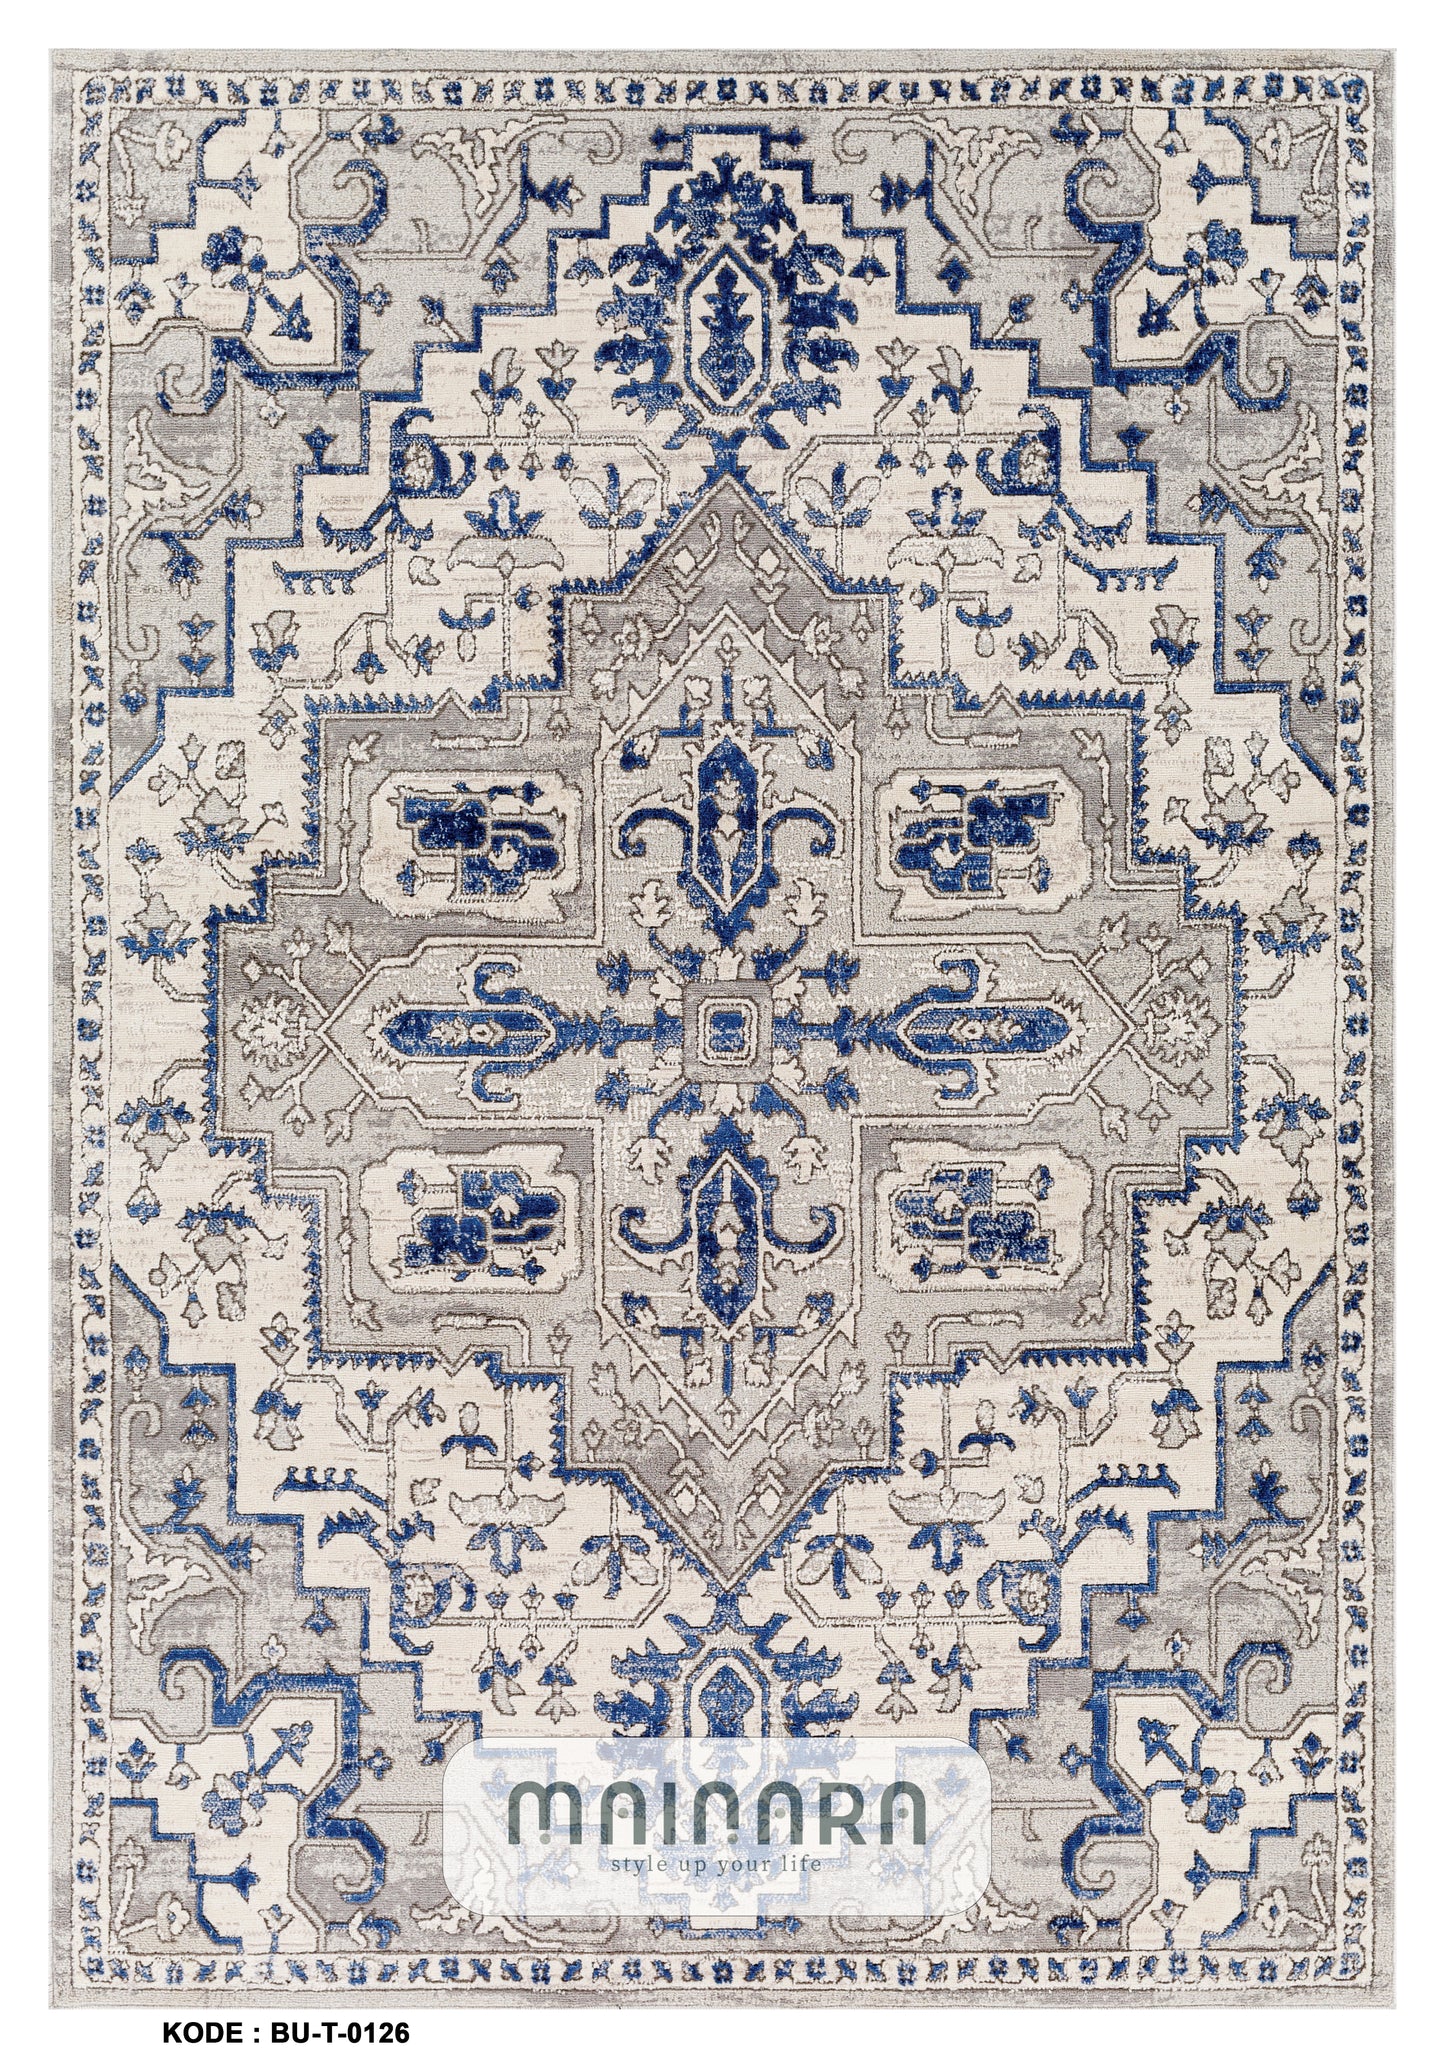 Karpet Tradisional (BU-T-0126) - Blue,Grey